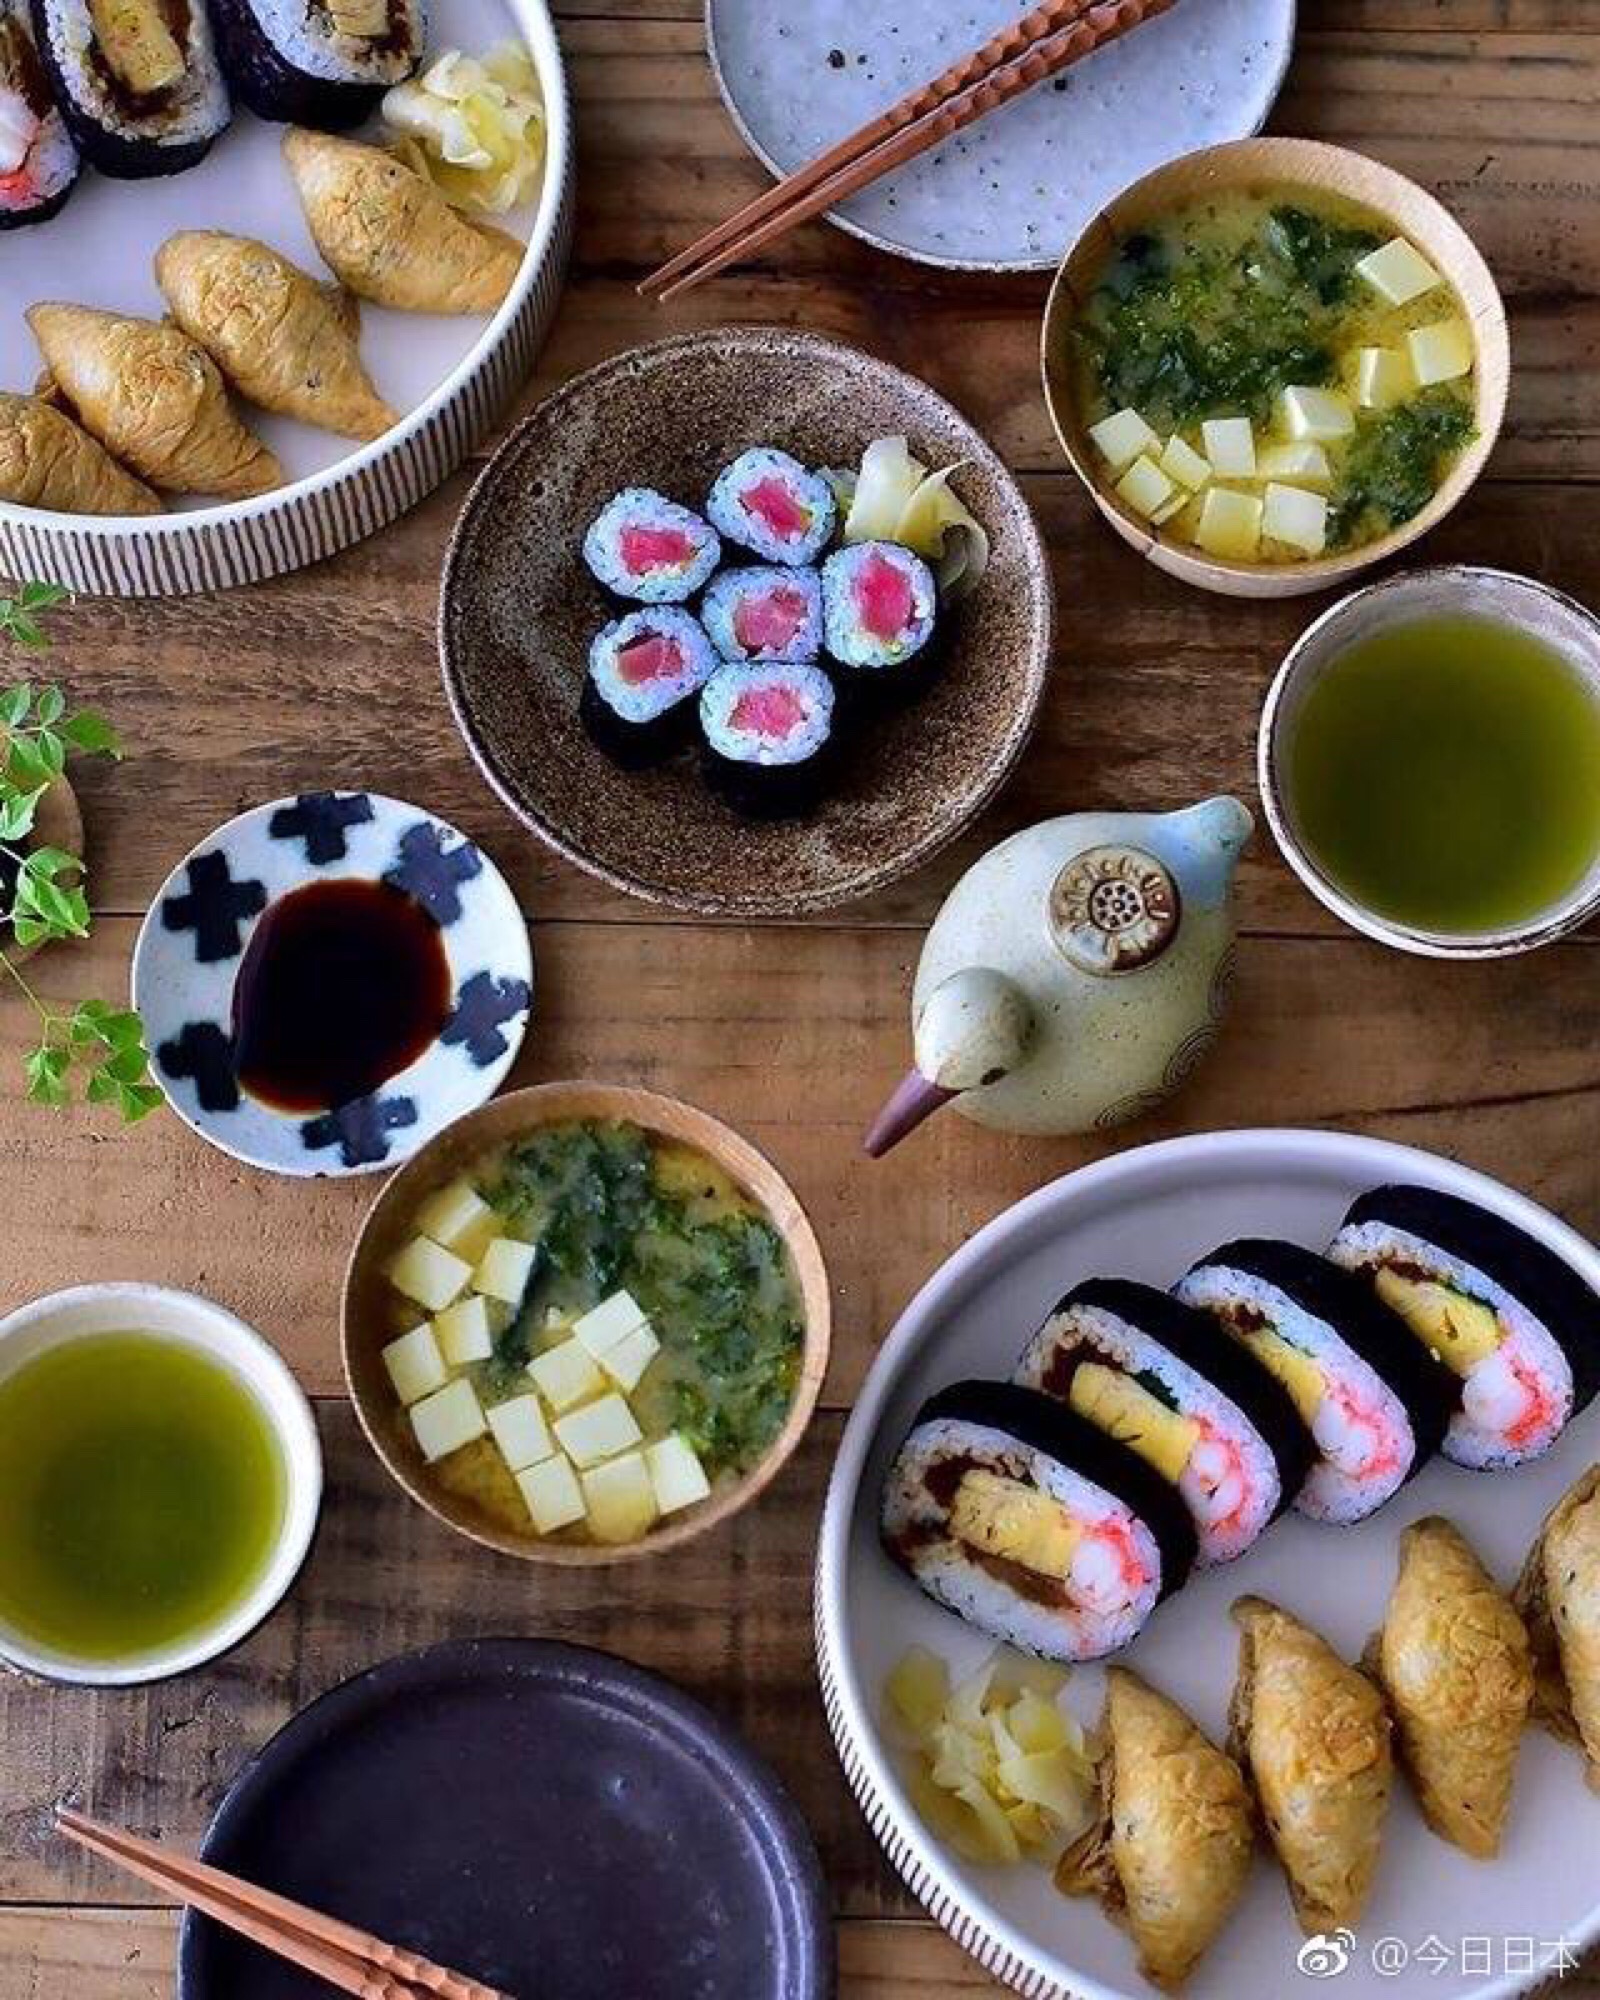 日本主妇sera分享的自家的三餐美食,看完让人怀疑人生啊